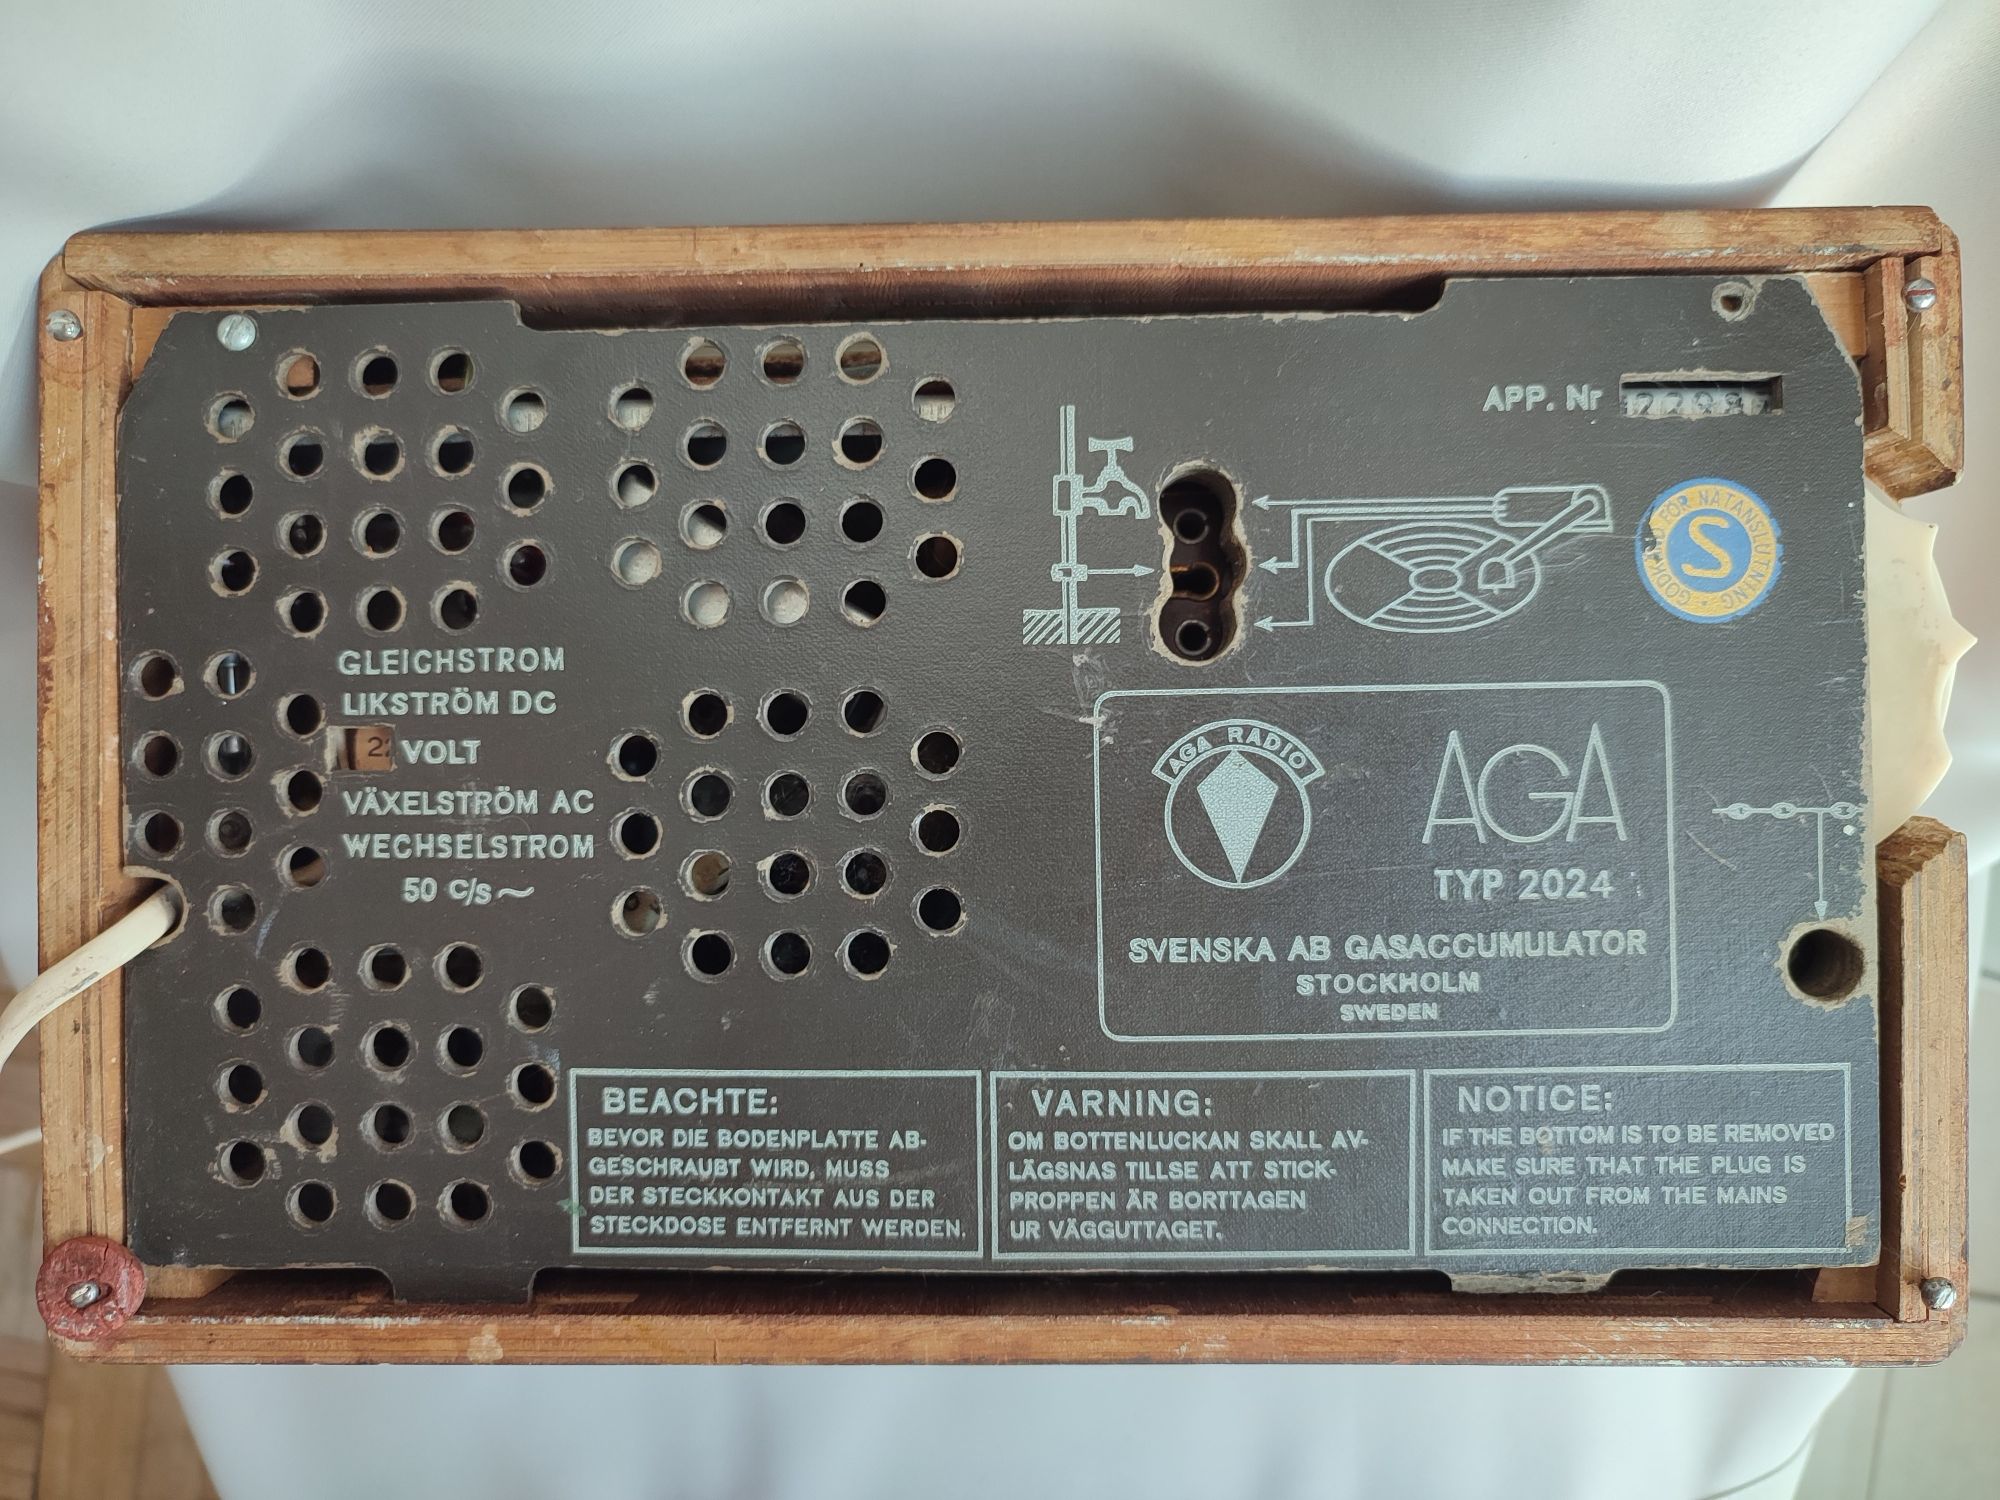 Radio vintage AGA typ 2024